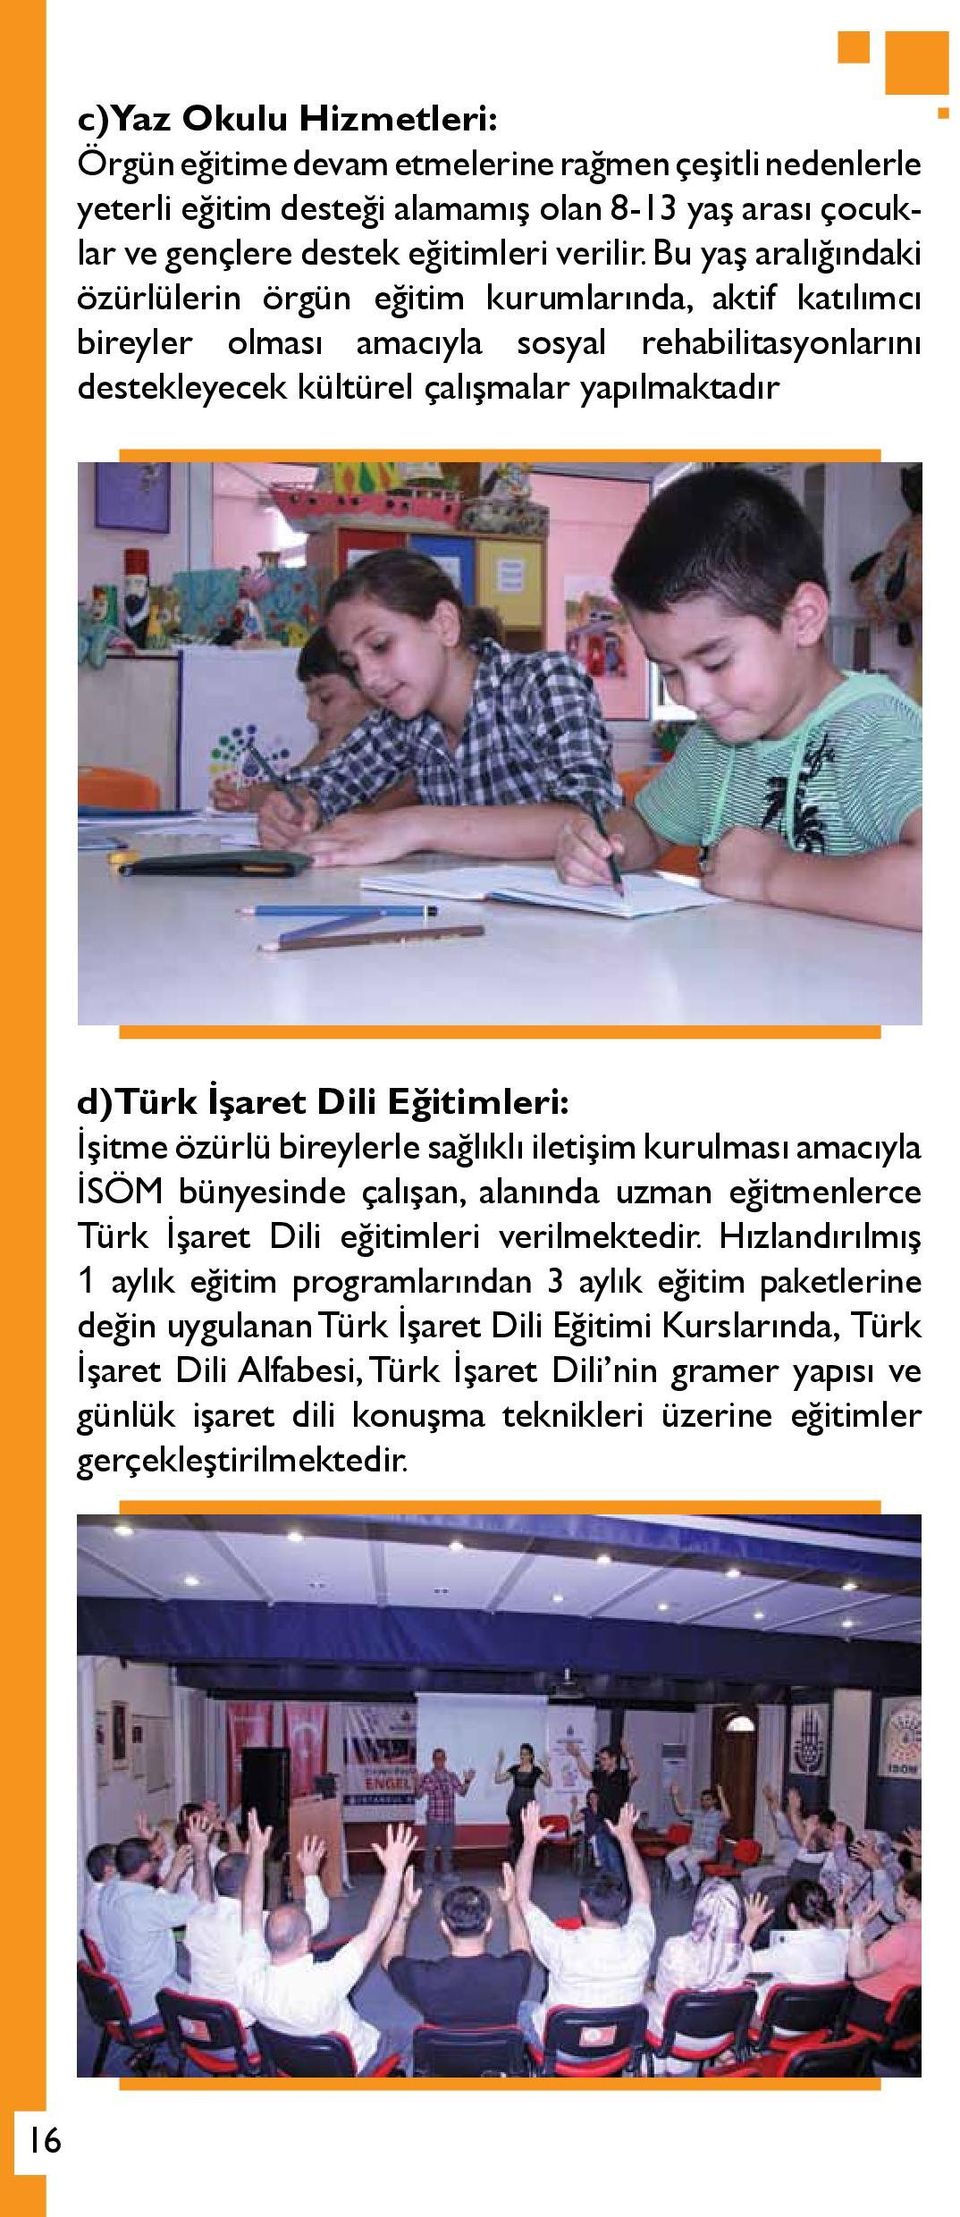 Eğitimleri: İşitme özürlü bireylerle sağlıklı iletişim kurulması amacıyla İSÖM bünyesinde çalışan, alanında uzman eğitmenlerce Türk İşaret Dili eğitimleri verilmektedir.